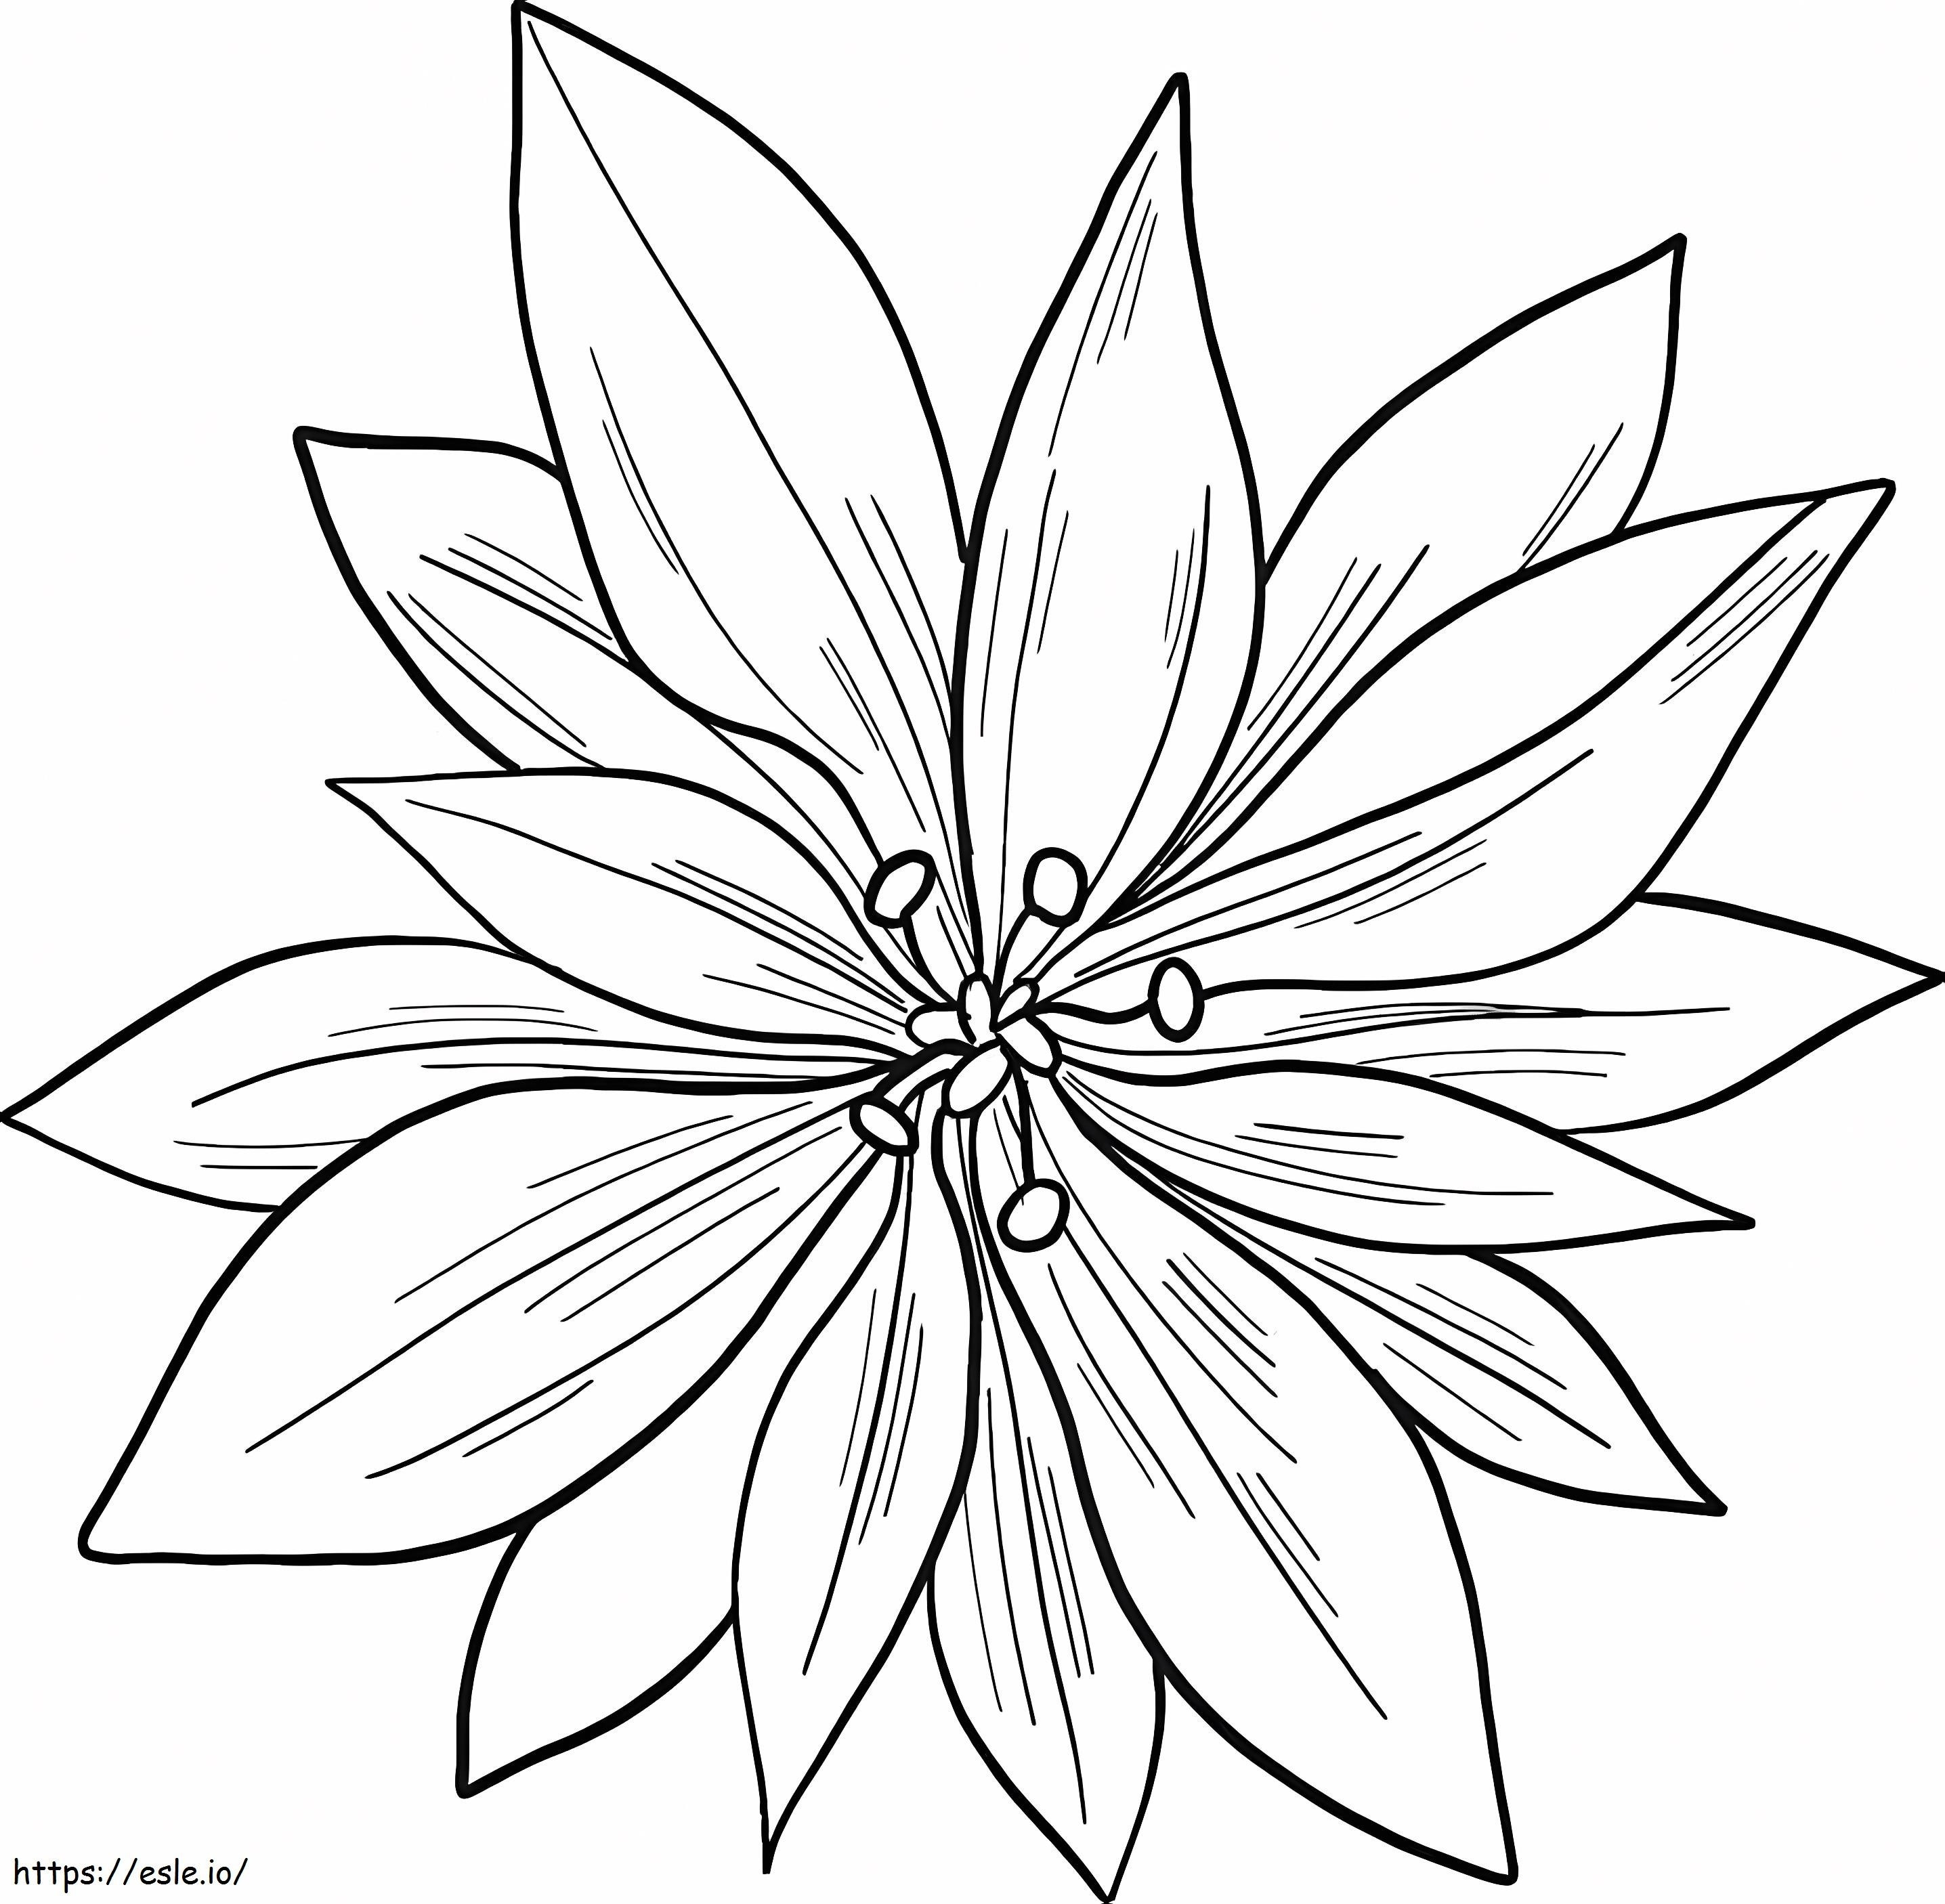 Coloriage Poinsettia imprimable à imprimer dessin